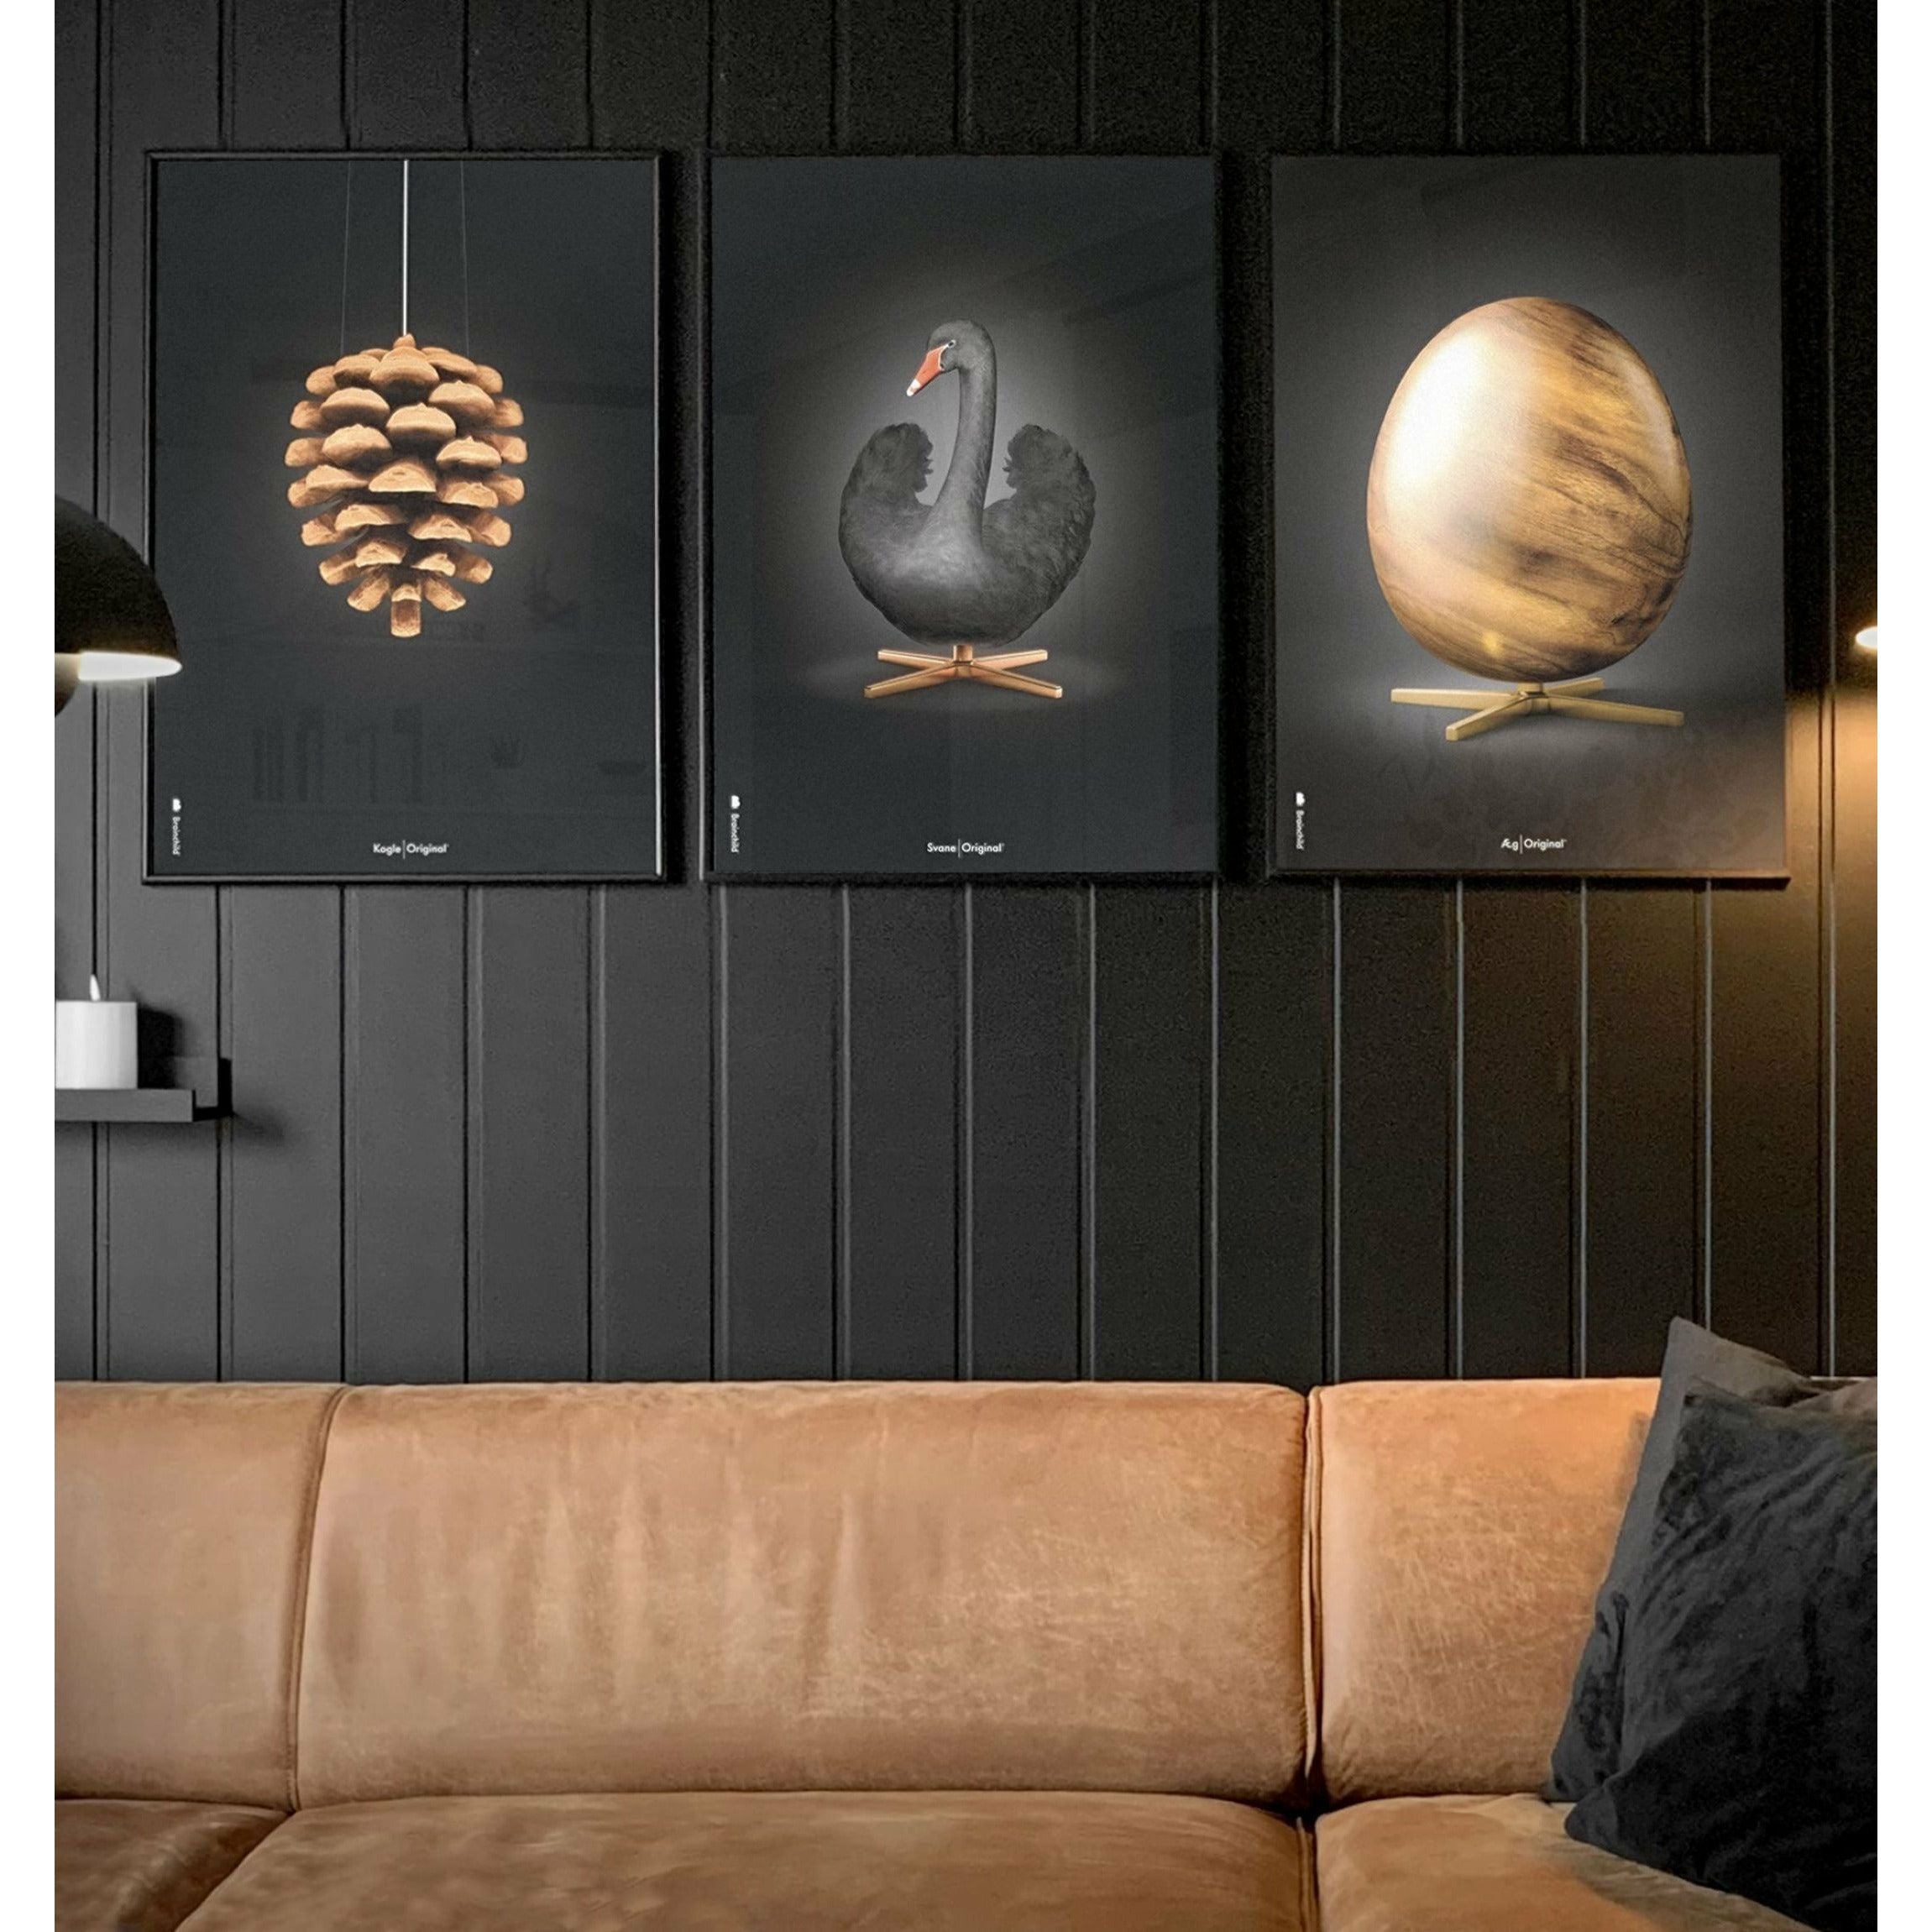 Brainchild Ei-Figuren Poster, Rahmen aus hellem Holz 30x40 Cm, Schwarz